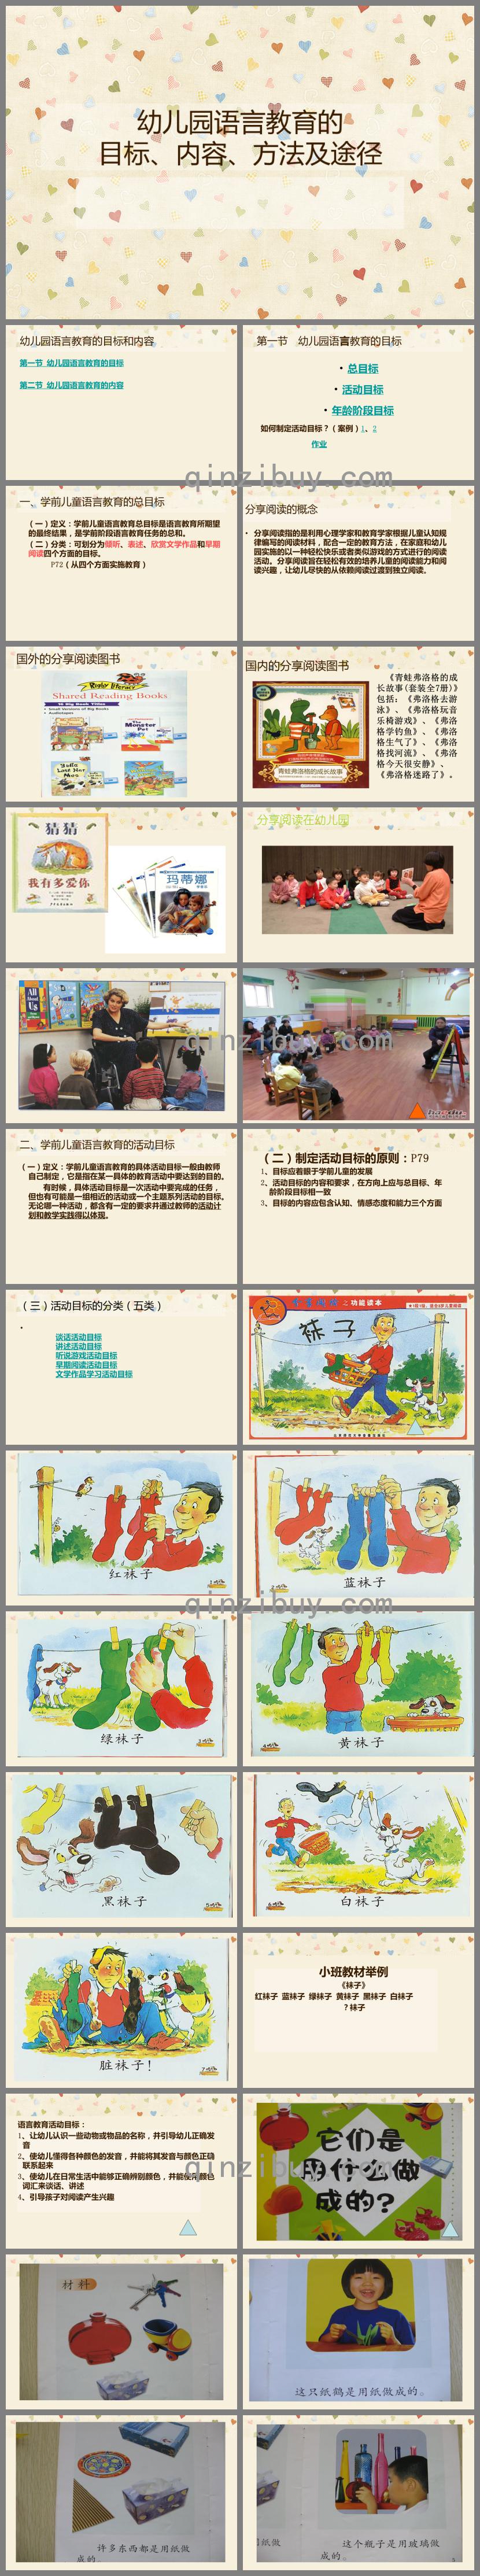 幼儿园语言教育的目标、内容、方法及途径PPT课件